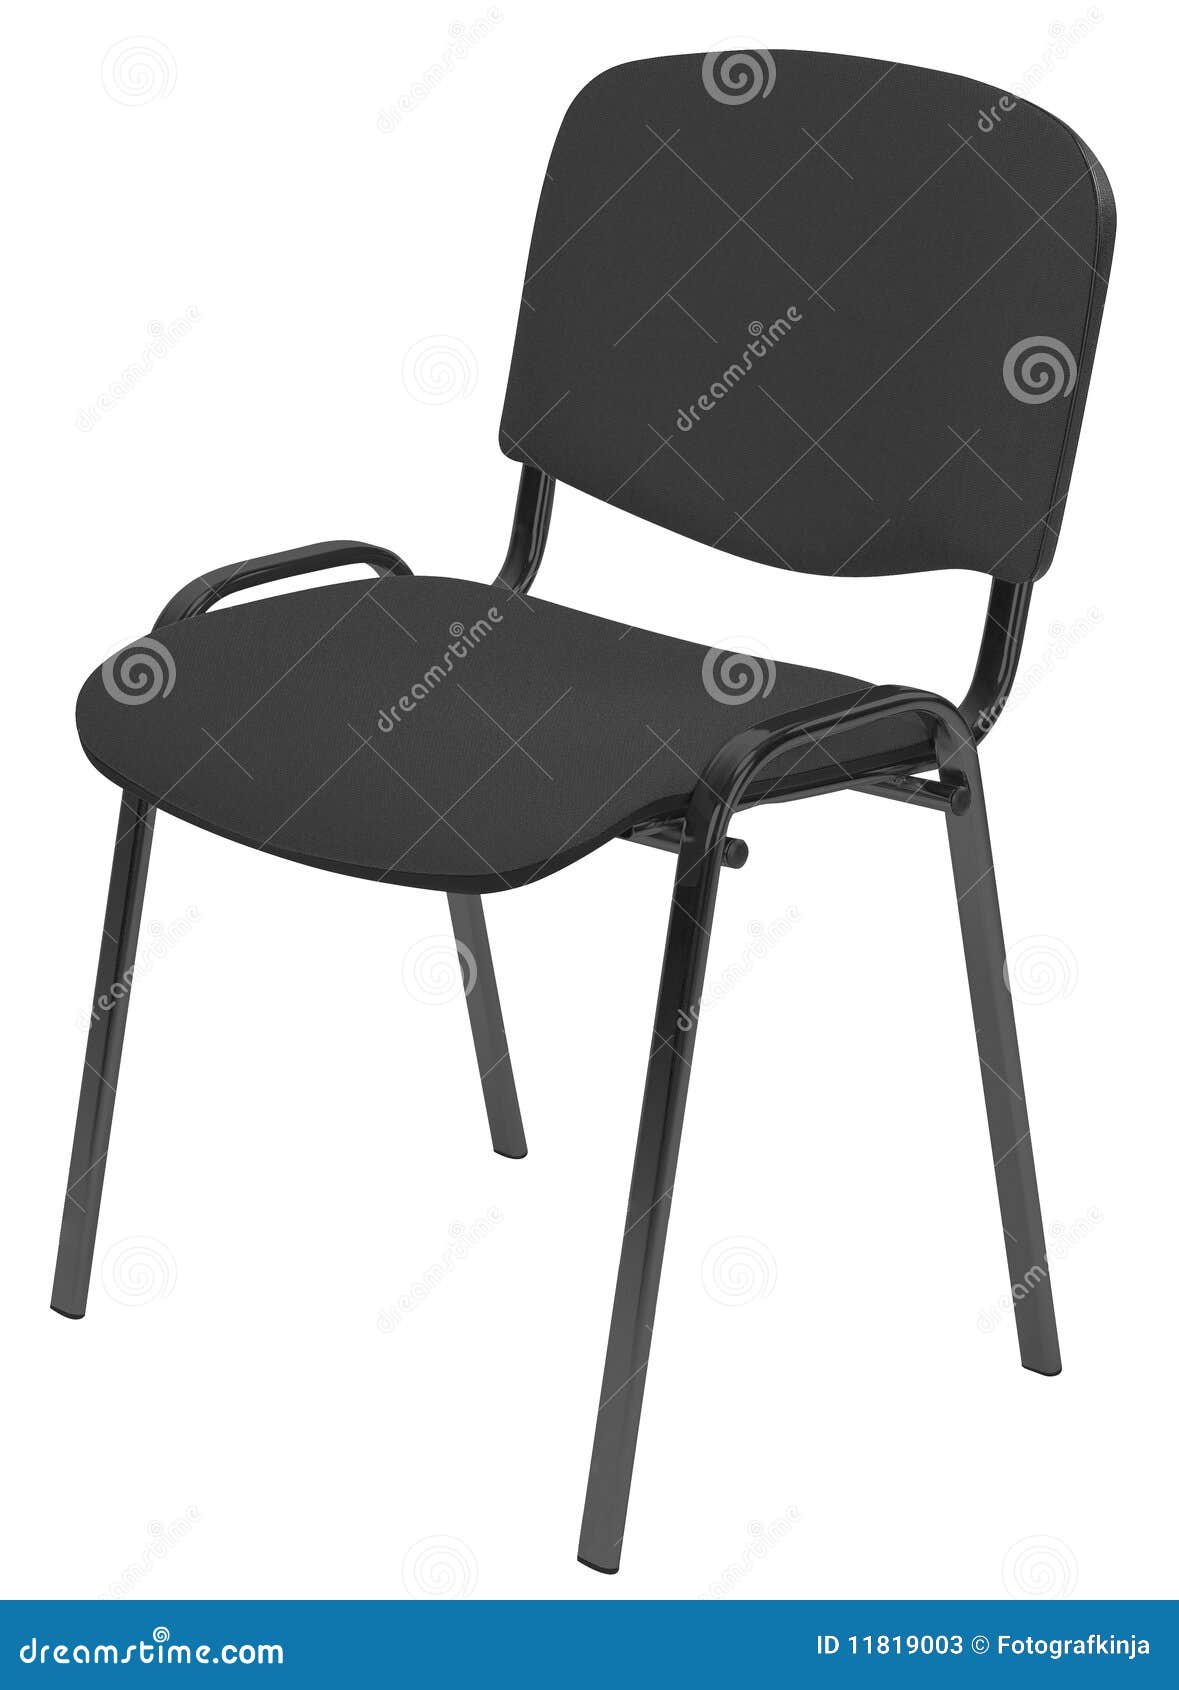 Cadeira acolchoada preto. Enegreça as cadeiras acolchoadas do escritório para apresentações e reuniões isoladas em um fundo branco.